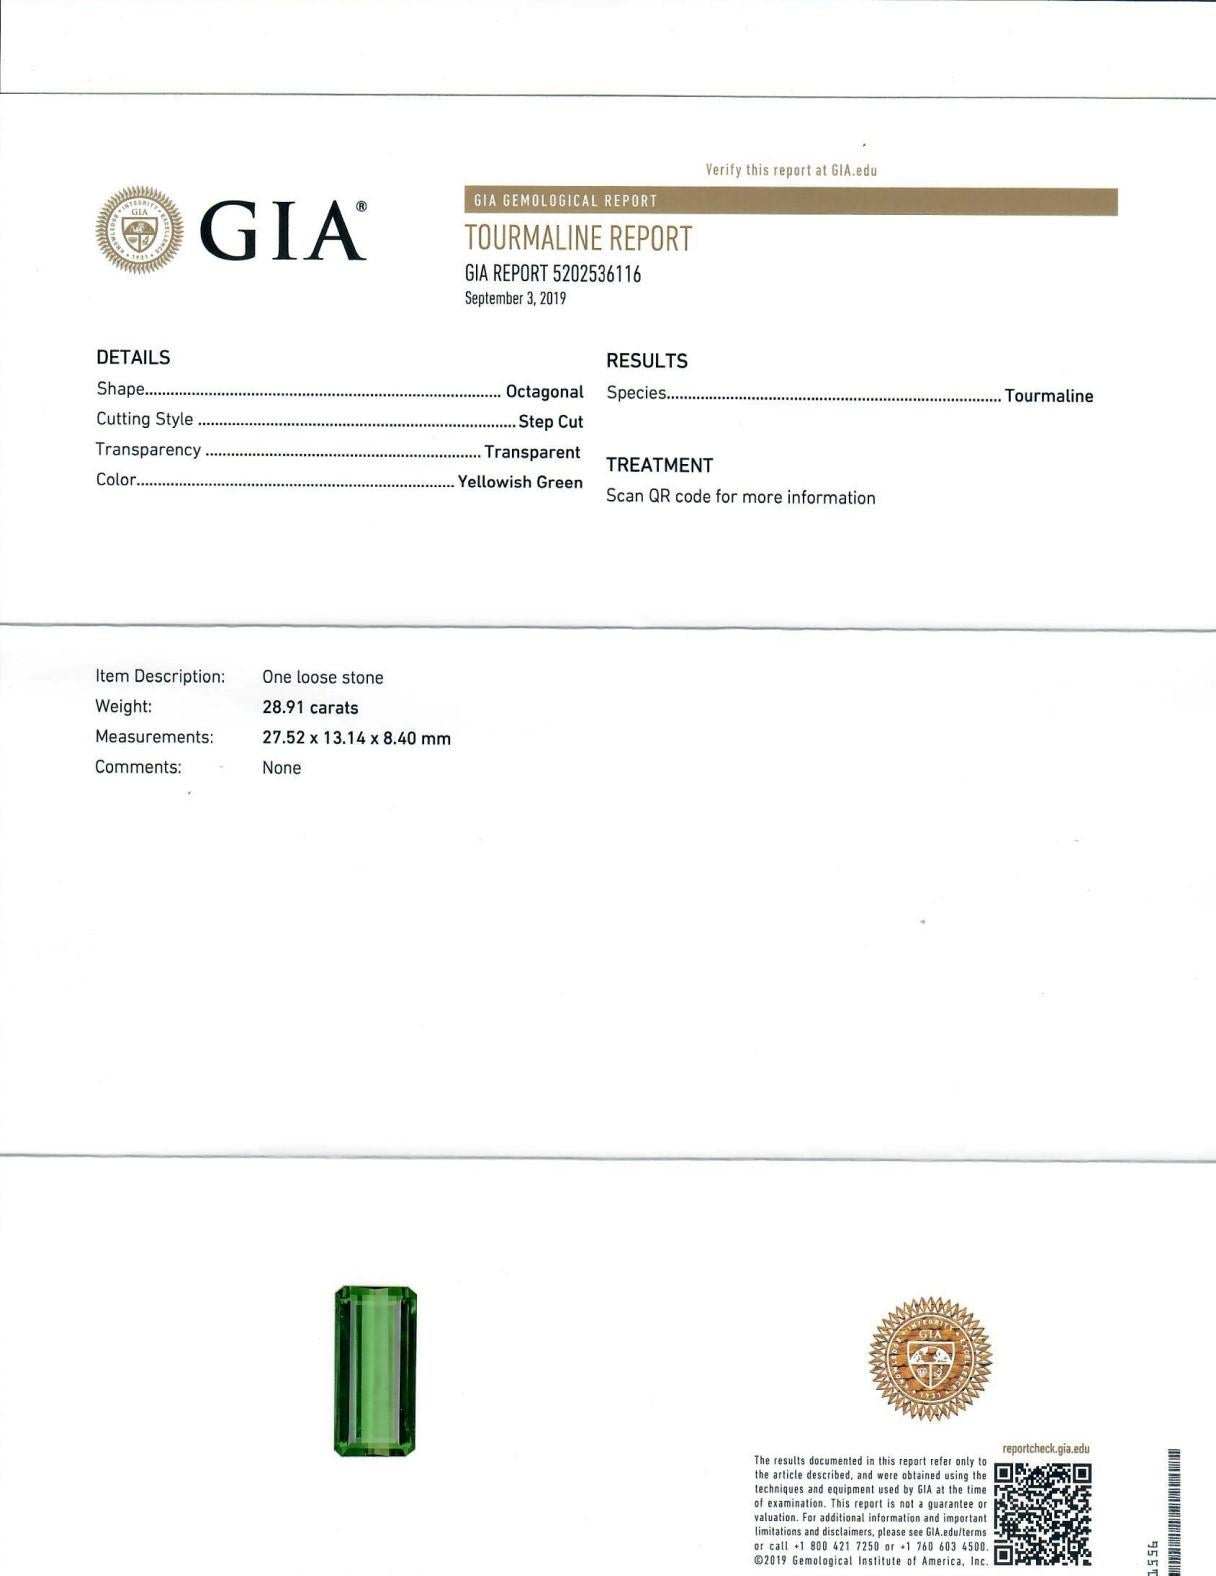 Emerald Cut GIA Certified 28.91 Carat No Heating Tourmaline For Sale